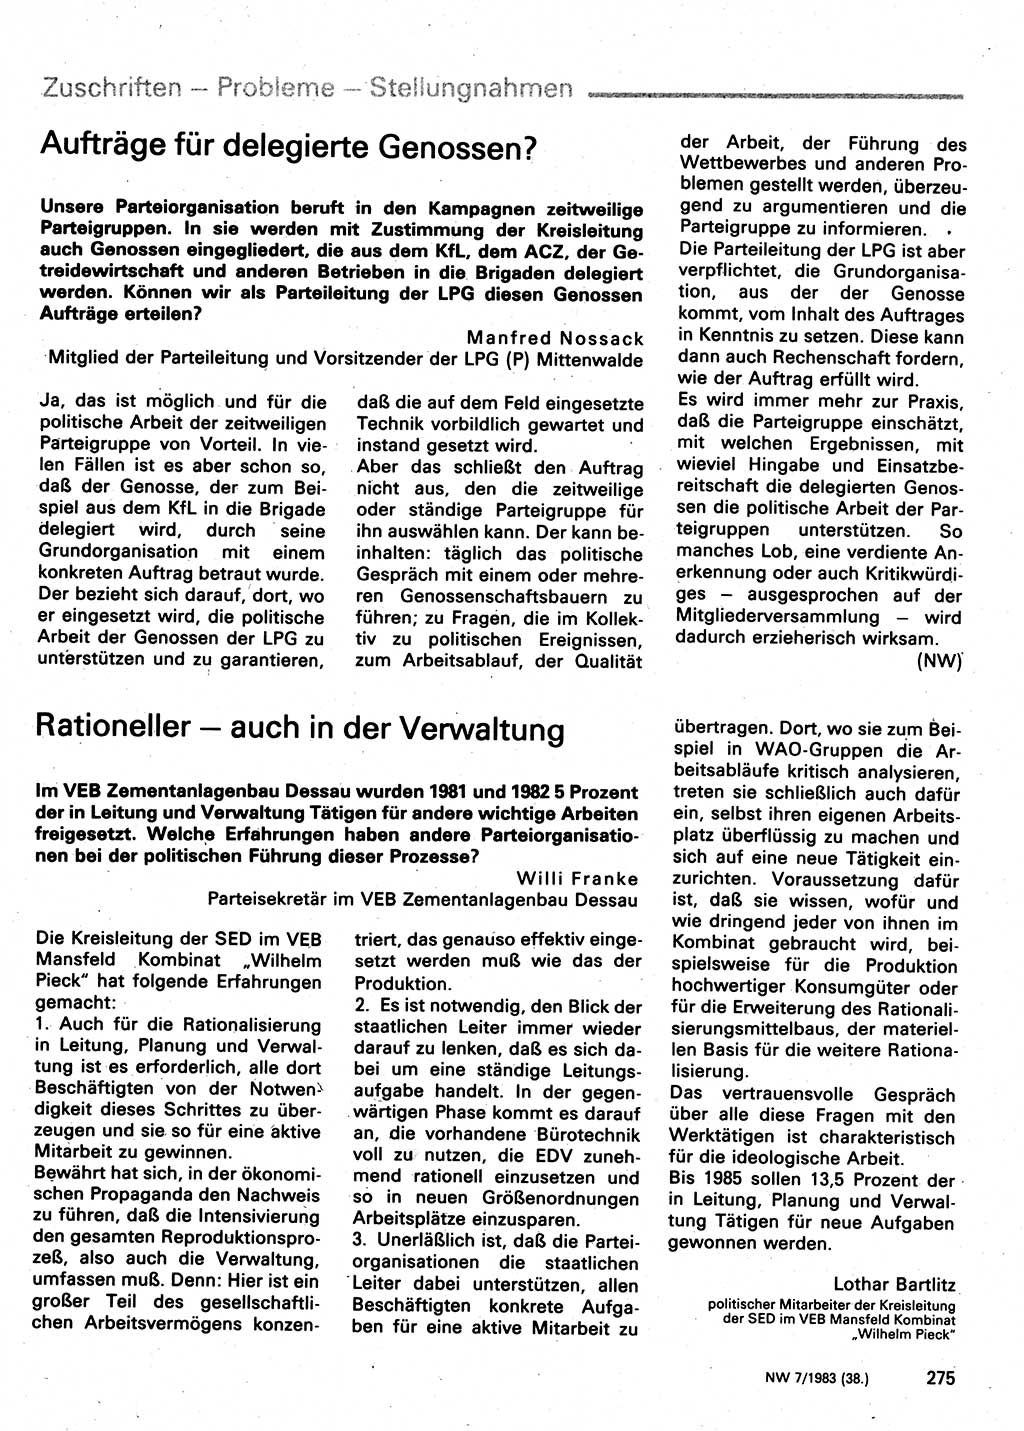 Neuer Weg (NW), Organ des Zentralkomitees (ZK) der SED (Sozialistische Einheitspartei Deutschlands) für Fragen des Parteilebens, 38. Jahrgang [Deutsche Demokratische Republik (DDR)] 1983, Seite 275 (NW ZK SED DDR 1983, S. 275)